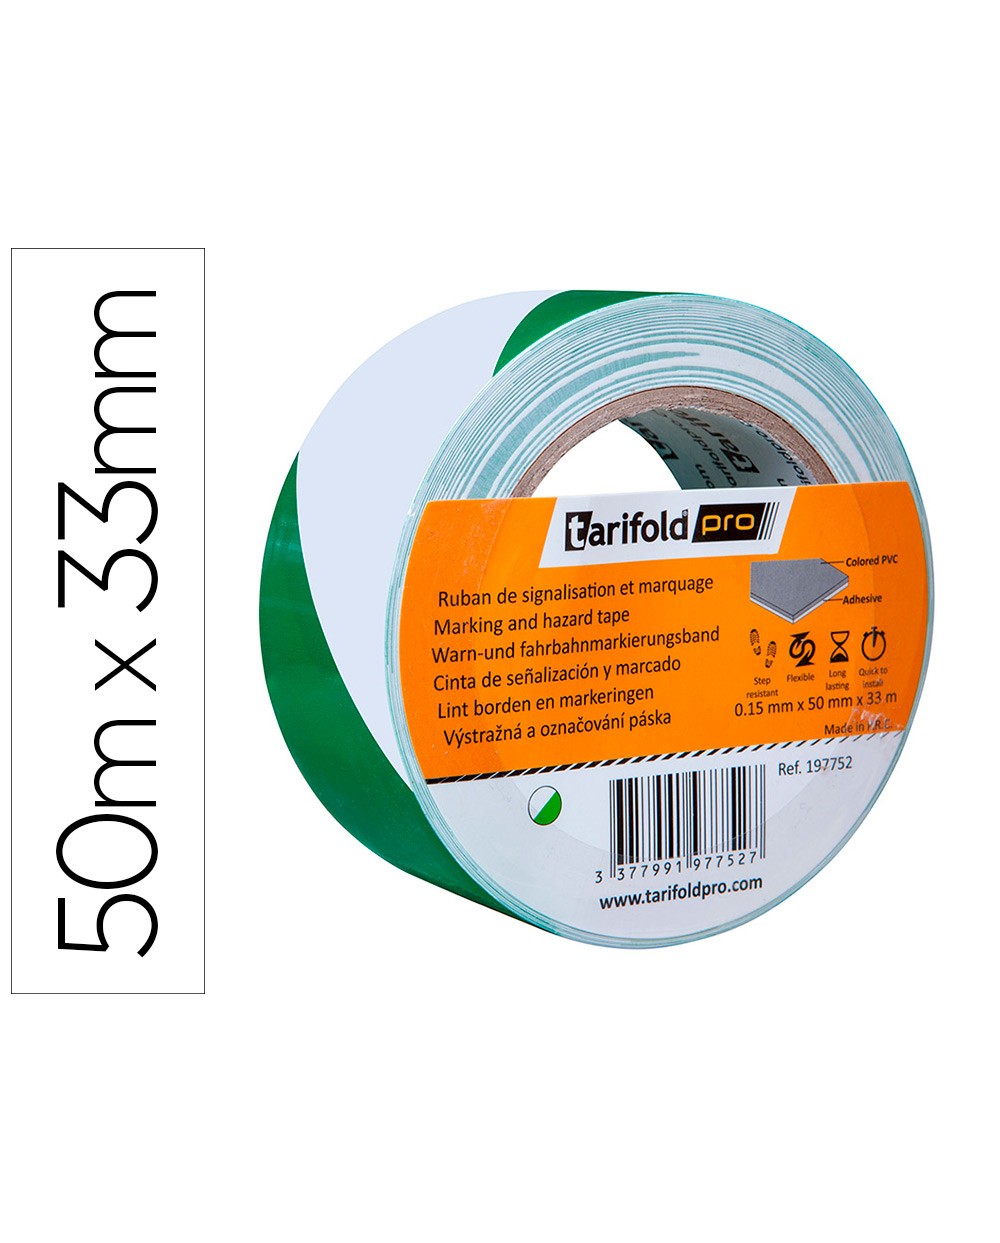 Cinta adhesiva tarifold seguridad para marcaje y senalizacion de suelo 33 mt x 50 mm color blanco verde